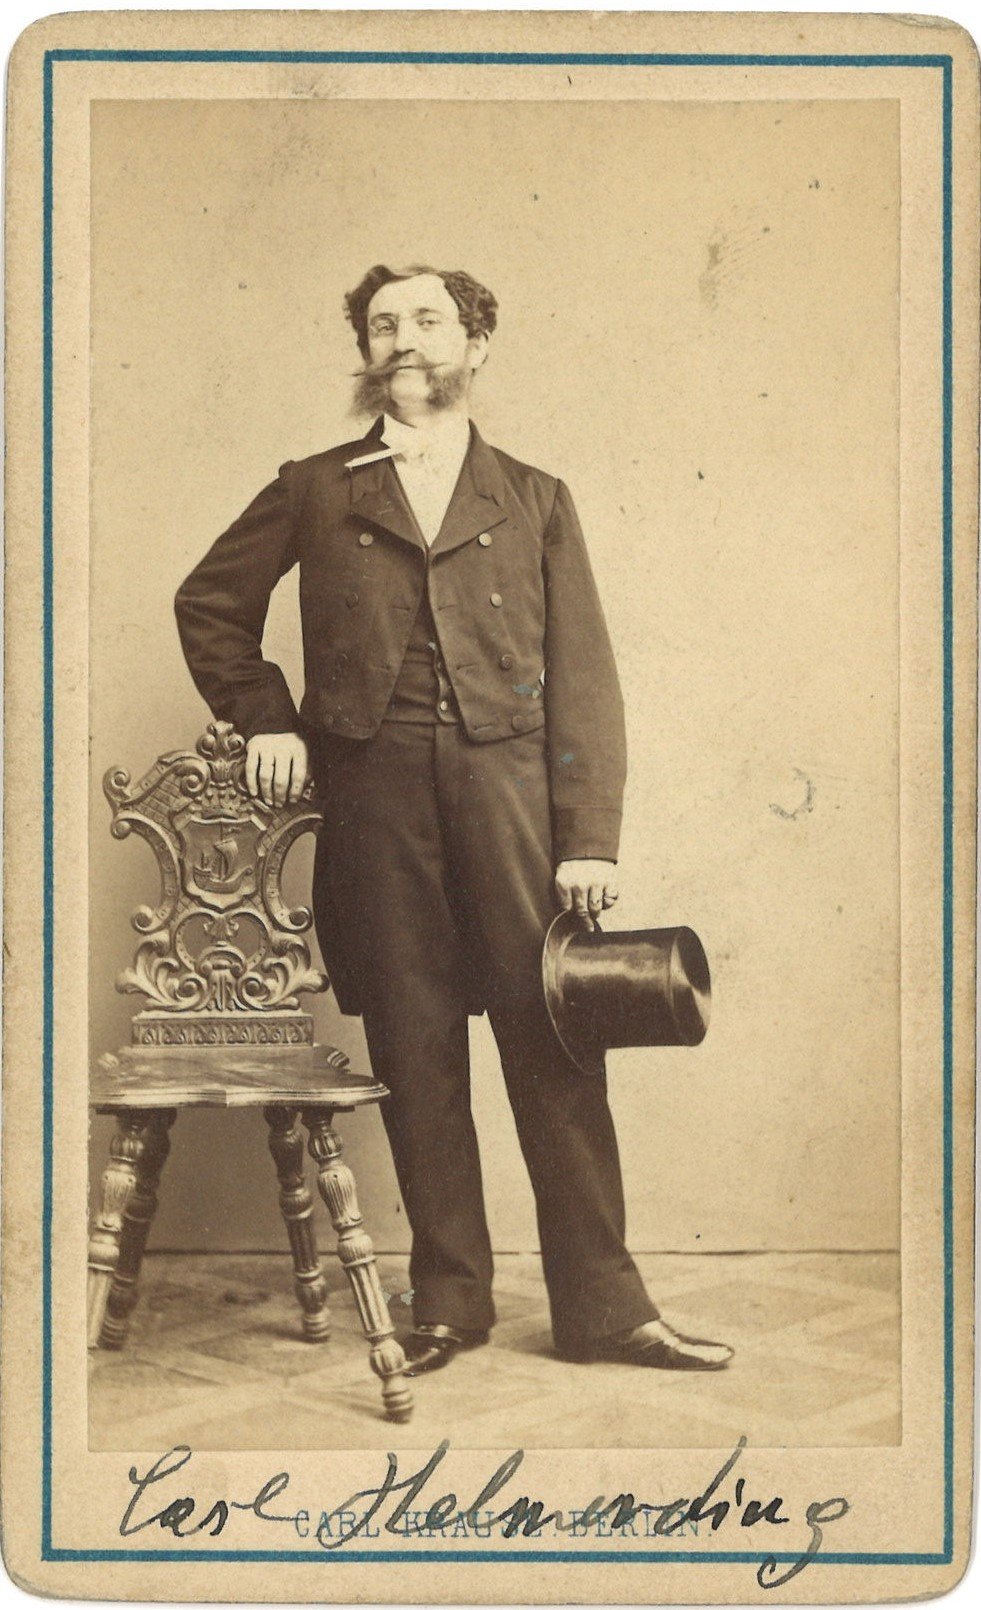 Helmerding, Karl (1822–1899), Schauspieler und Dramatiker (Landesgeschichtliche Vereinigung für die Mark Brandenburg e.V., Archiv CC BY)